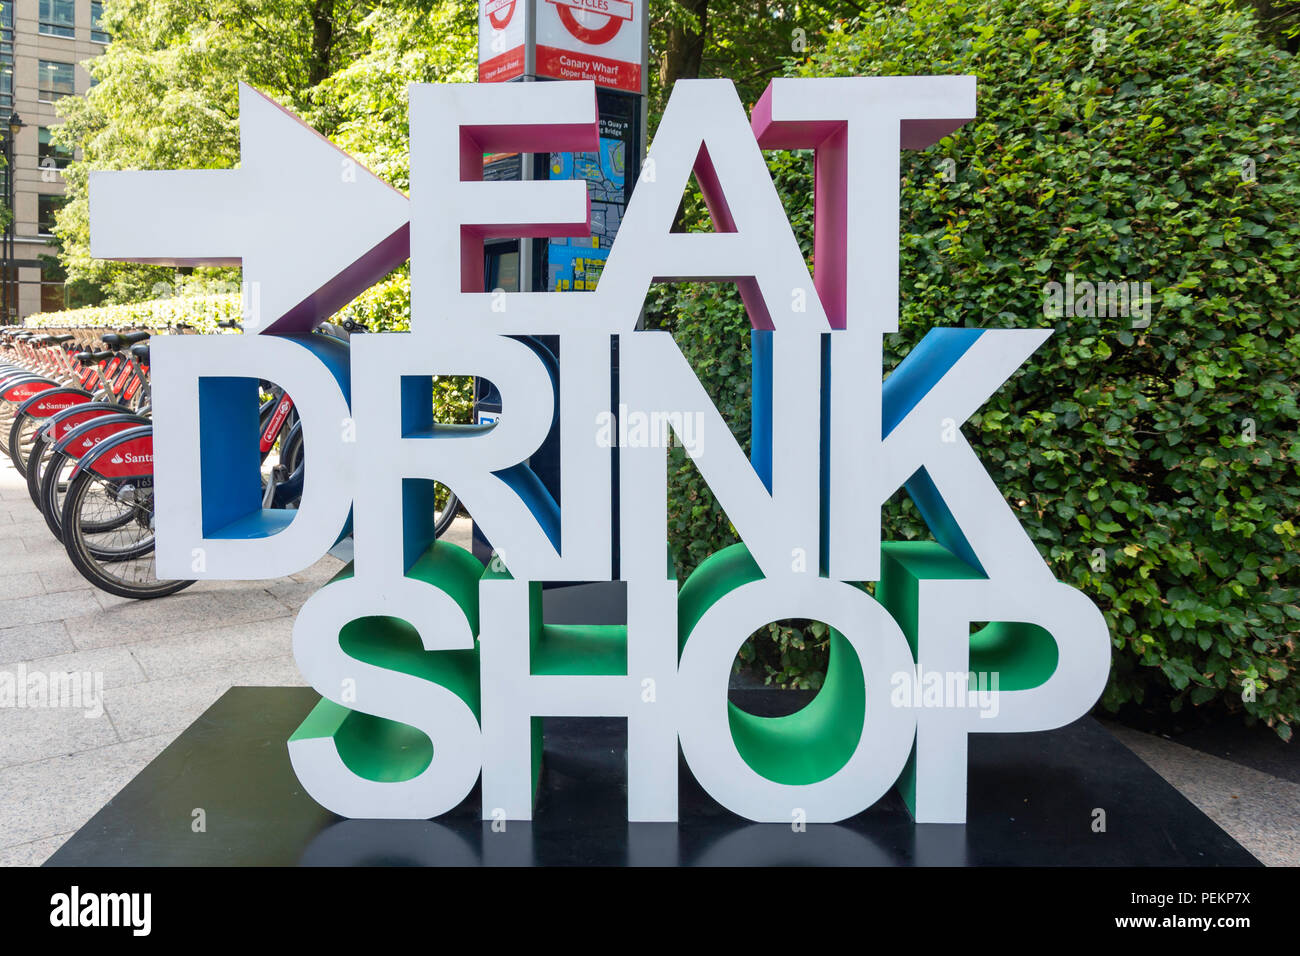 Mangiare e bere, shop segno nel parco del Cinquantenario, Canary Wharf, London Borough of Tower Hamlets, London, Greater London, England, Regno Unito Foto Stock